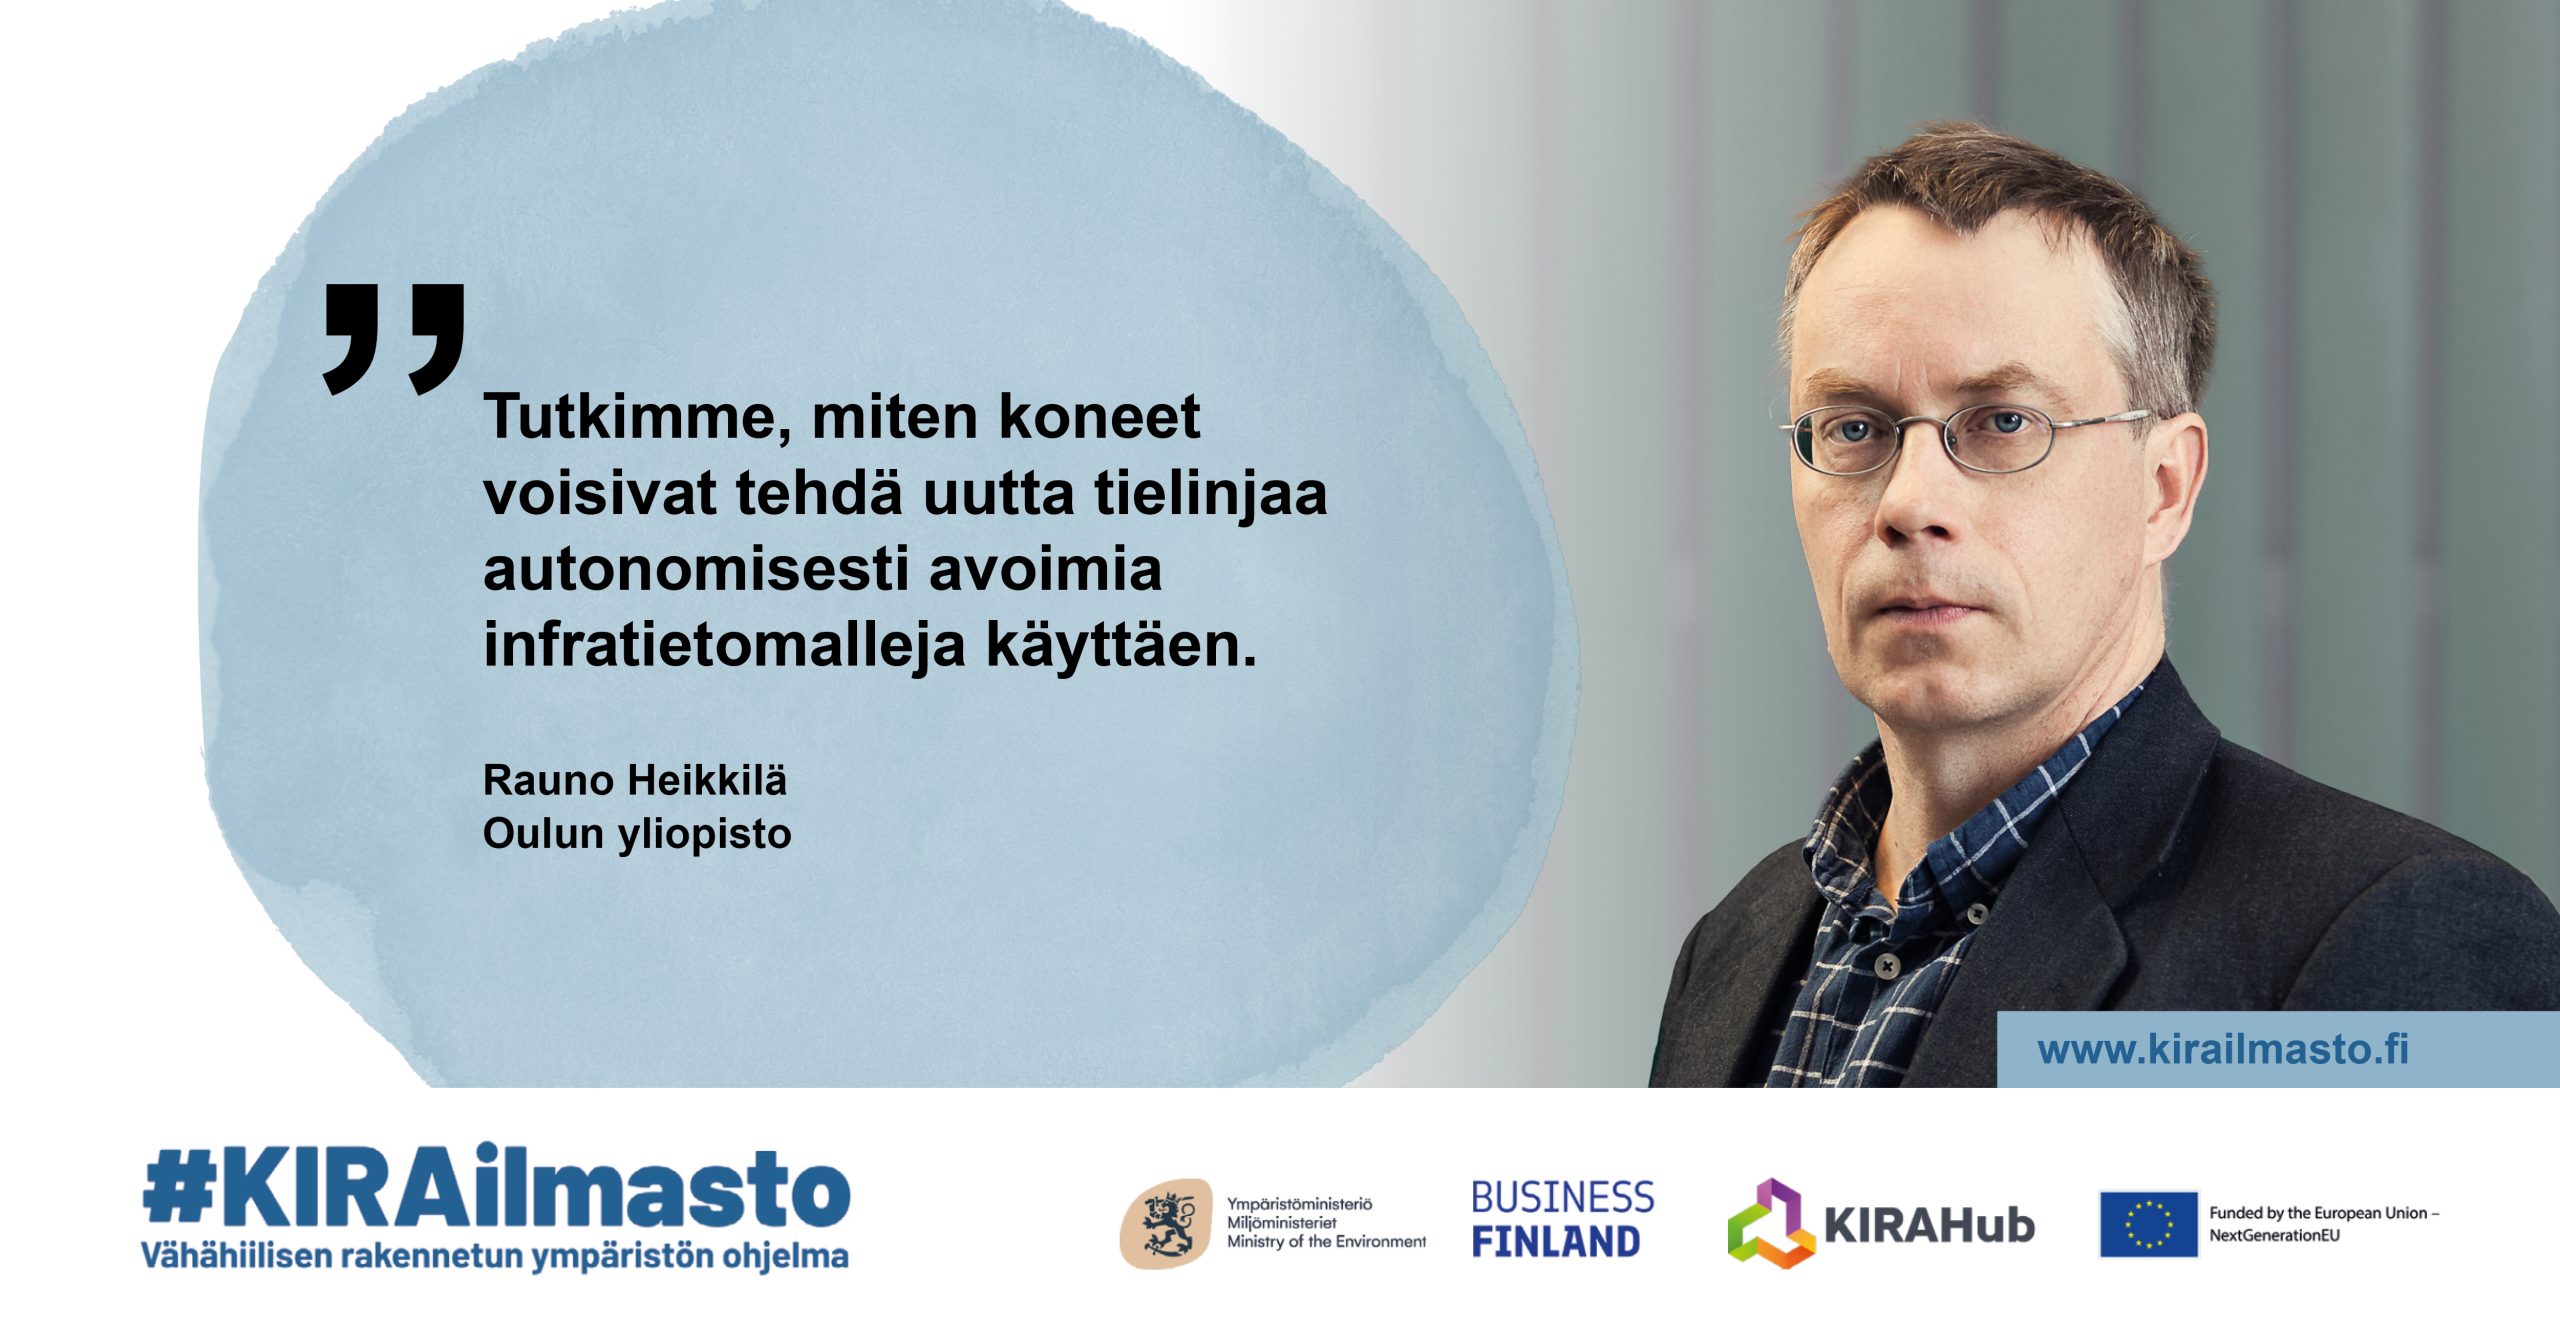 Rauno Heikkilä, sitaatti: "Tutkimme, miten koneet voisivat tehdä uutta tielinjaa autonomisesti avoimia infratietomalleja käyttäen".